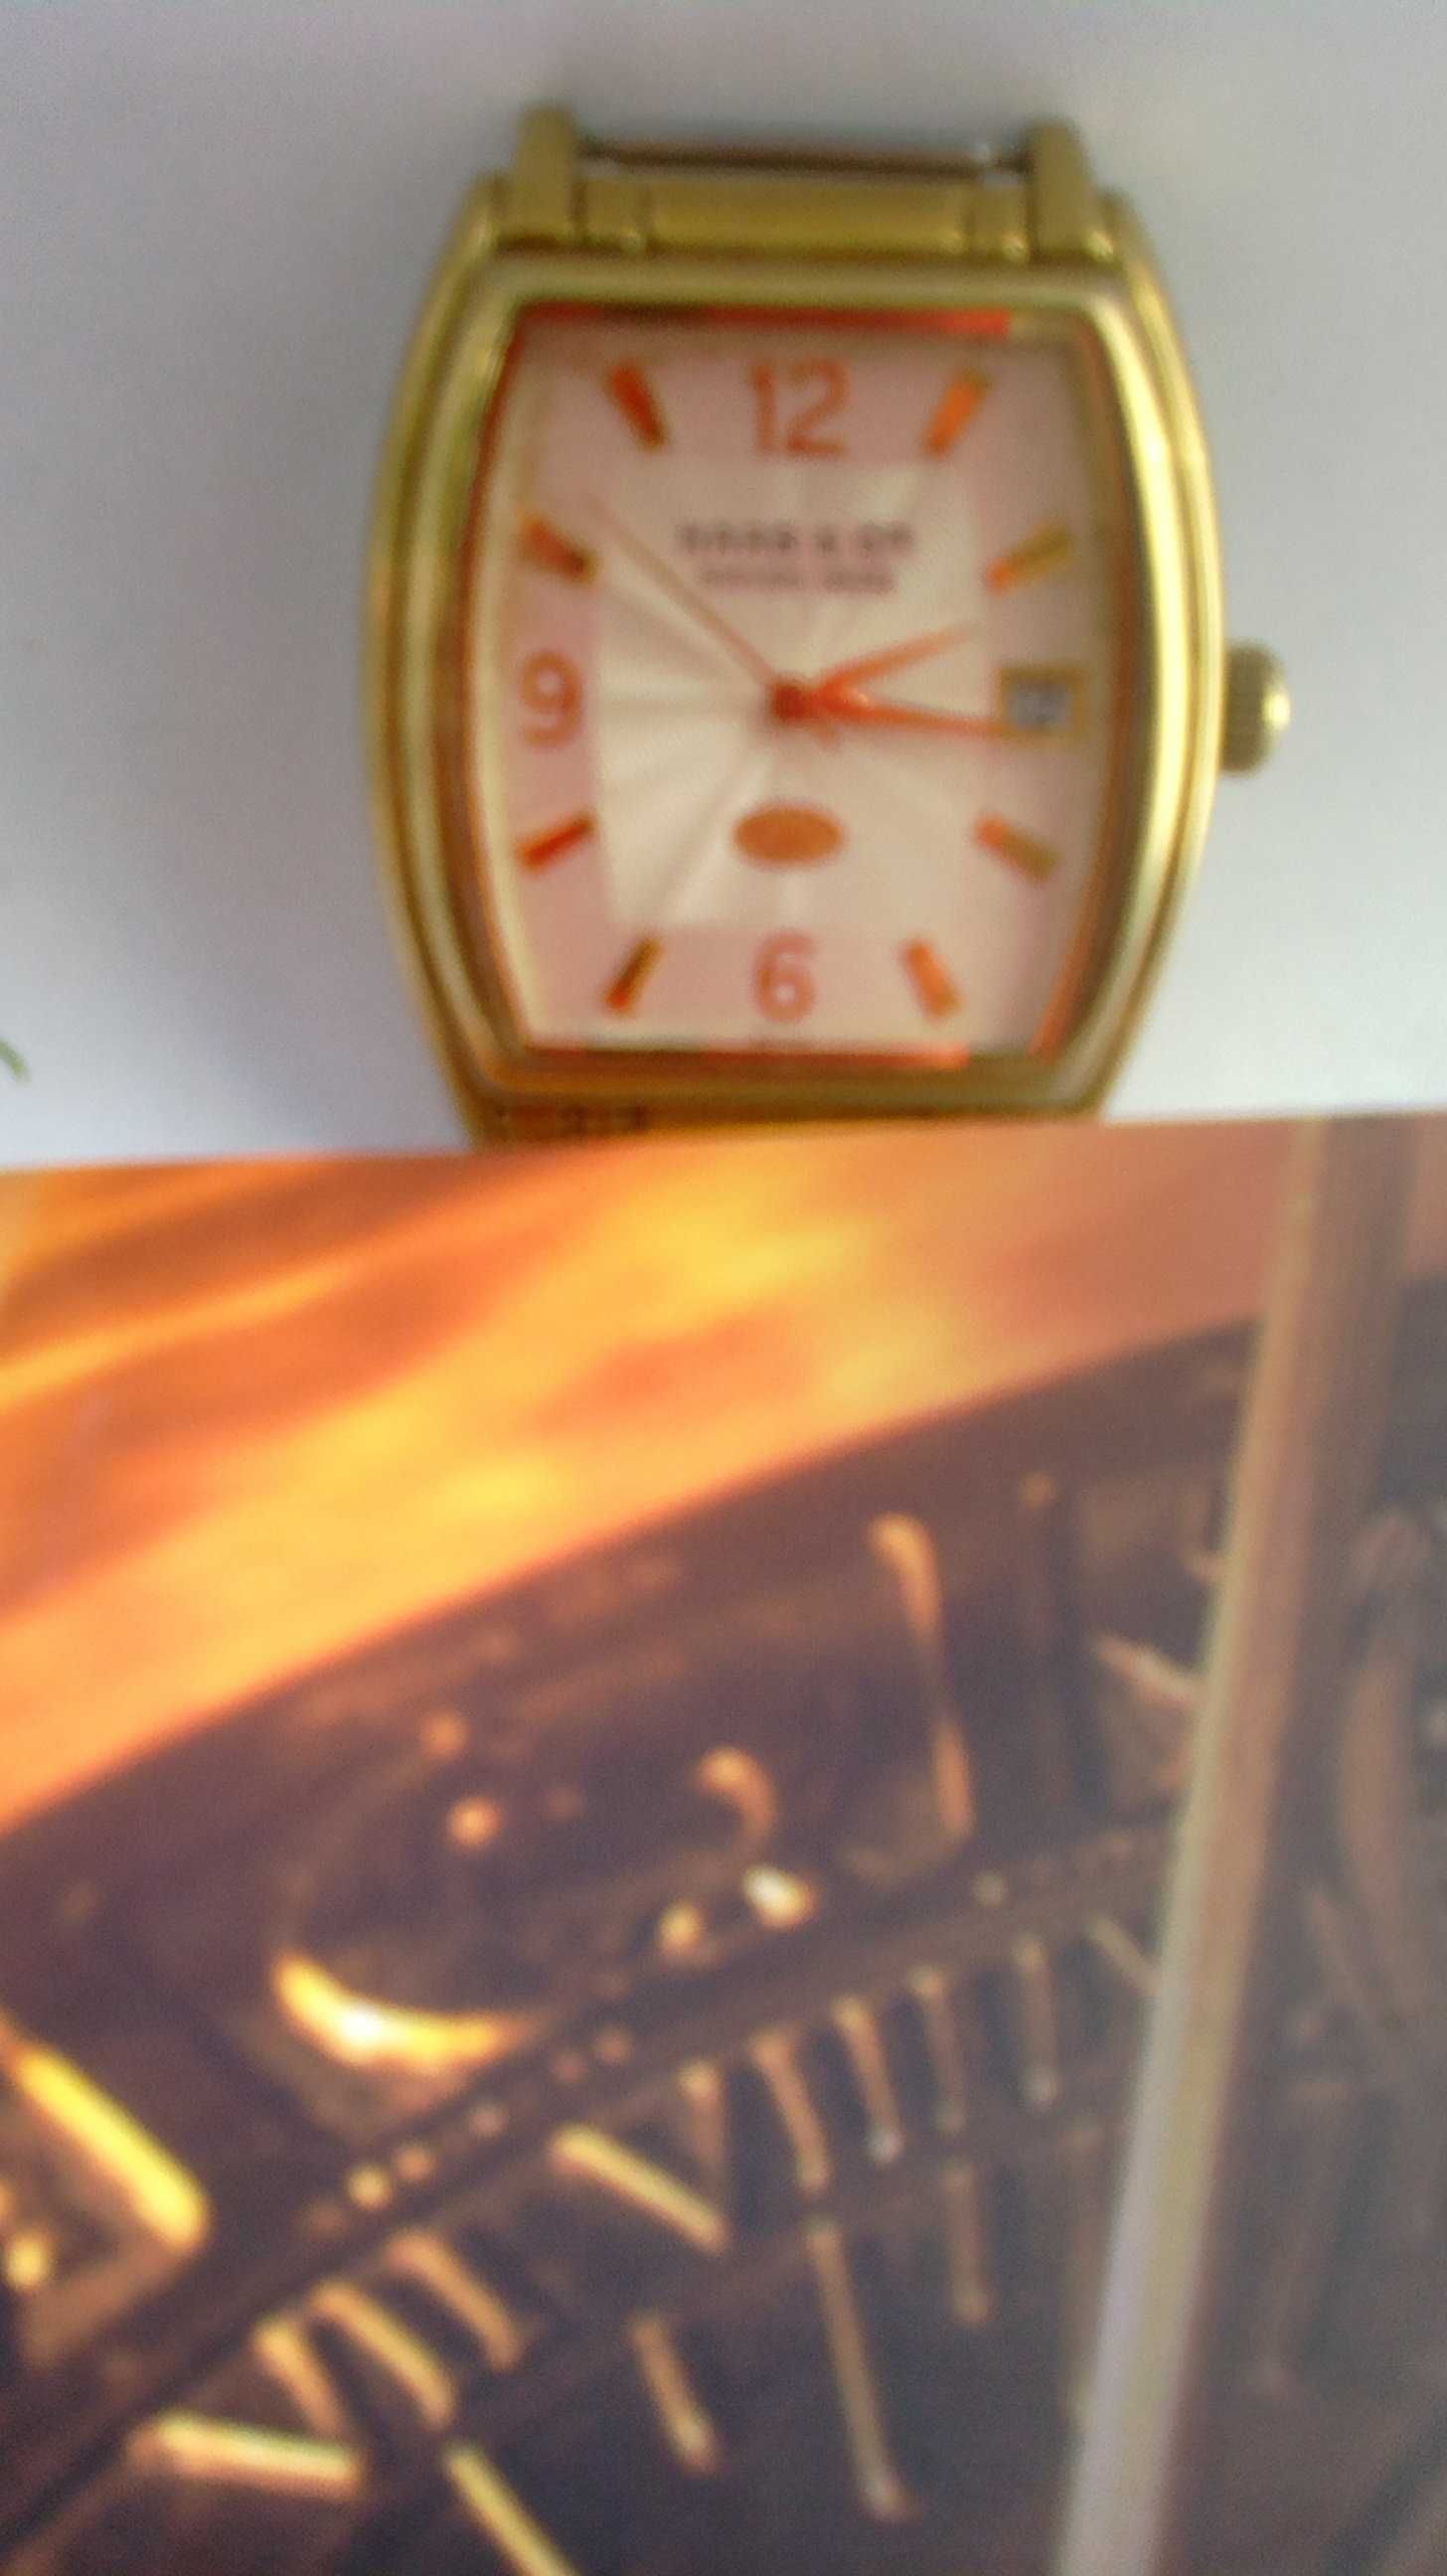 Часы мужские марки HAAS & C ie (Швейцария) нерабочие часовому мастеру.